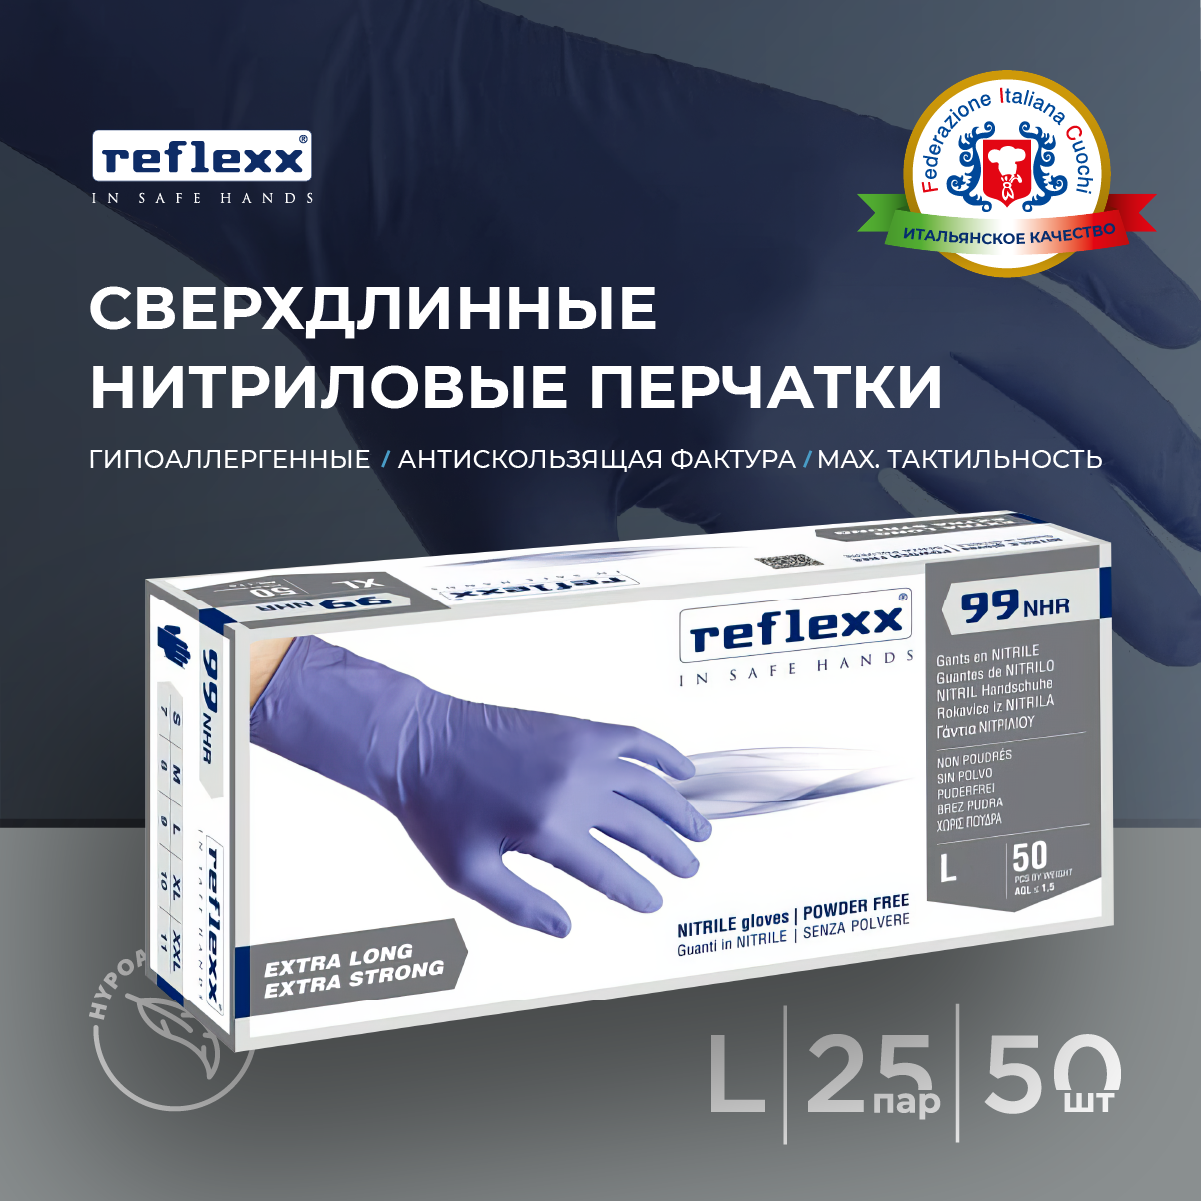 Reflexx | Одноразовые перчатки химостойкие сверхдлинные 29см. Размер-L. 8,8 гр. Толщина 0,15 мм.